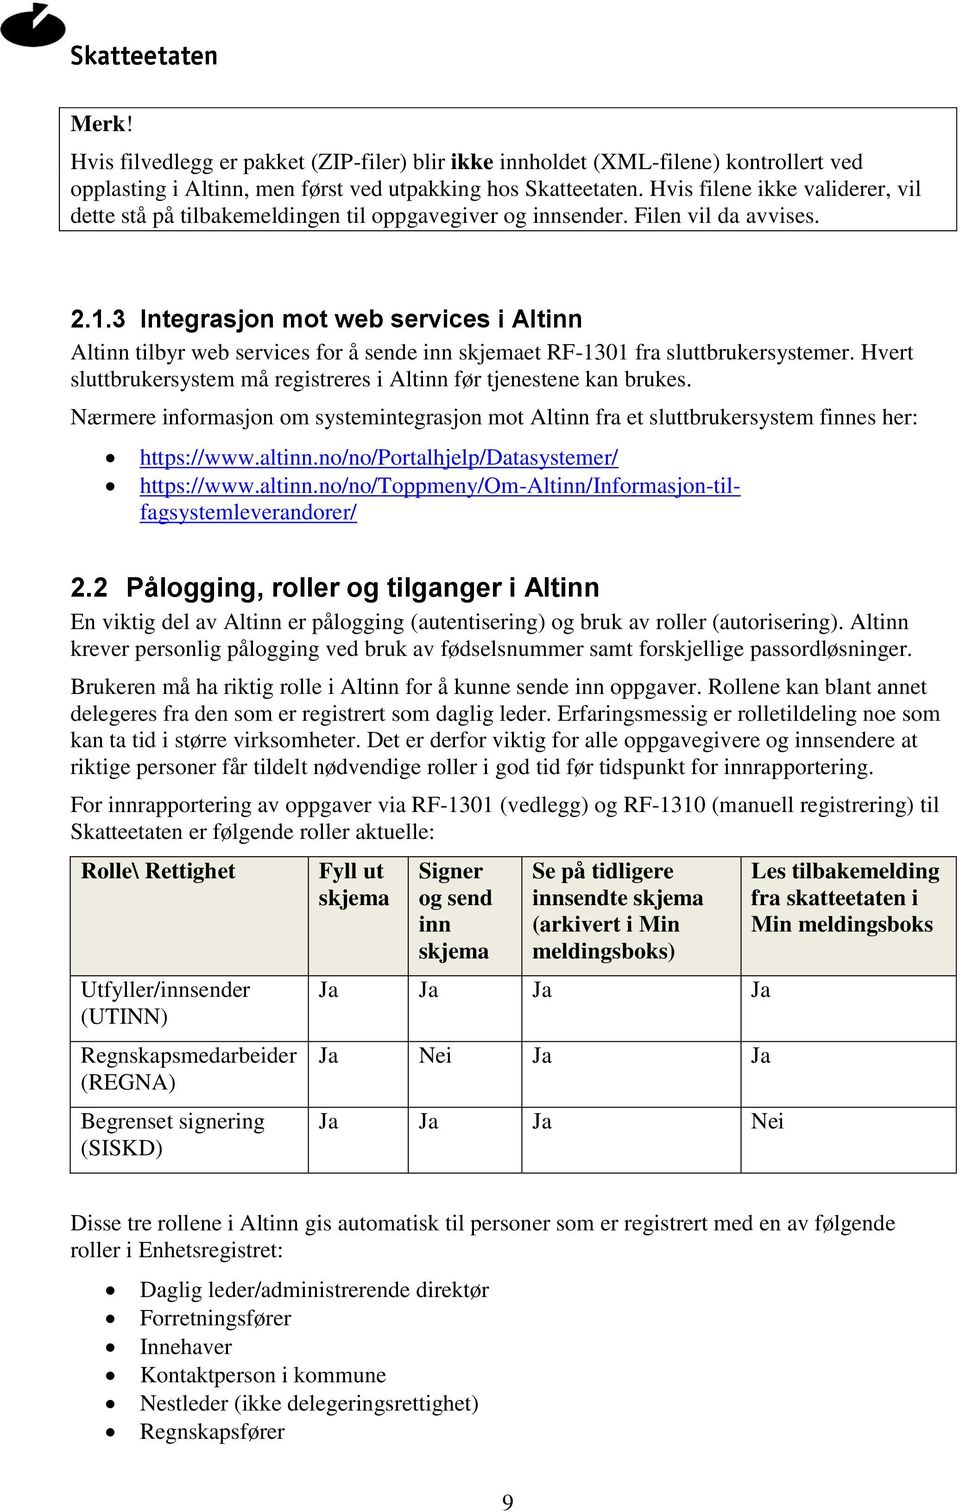 3 Integrasjon mot web services i Altinn Altinn tilbyr web services for å sende inn skjemaet RF-1301 fra sluttbrukersystemer. Hvert sluttbrukersystem må registreres i Altinn før tjenestene kan brukes.